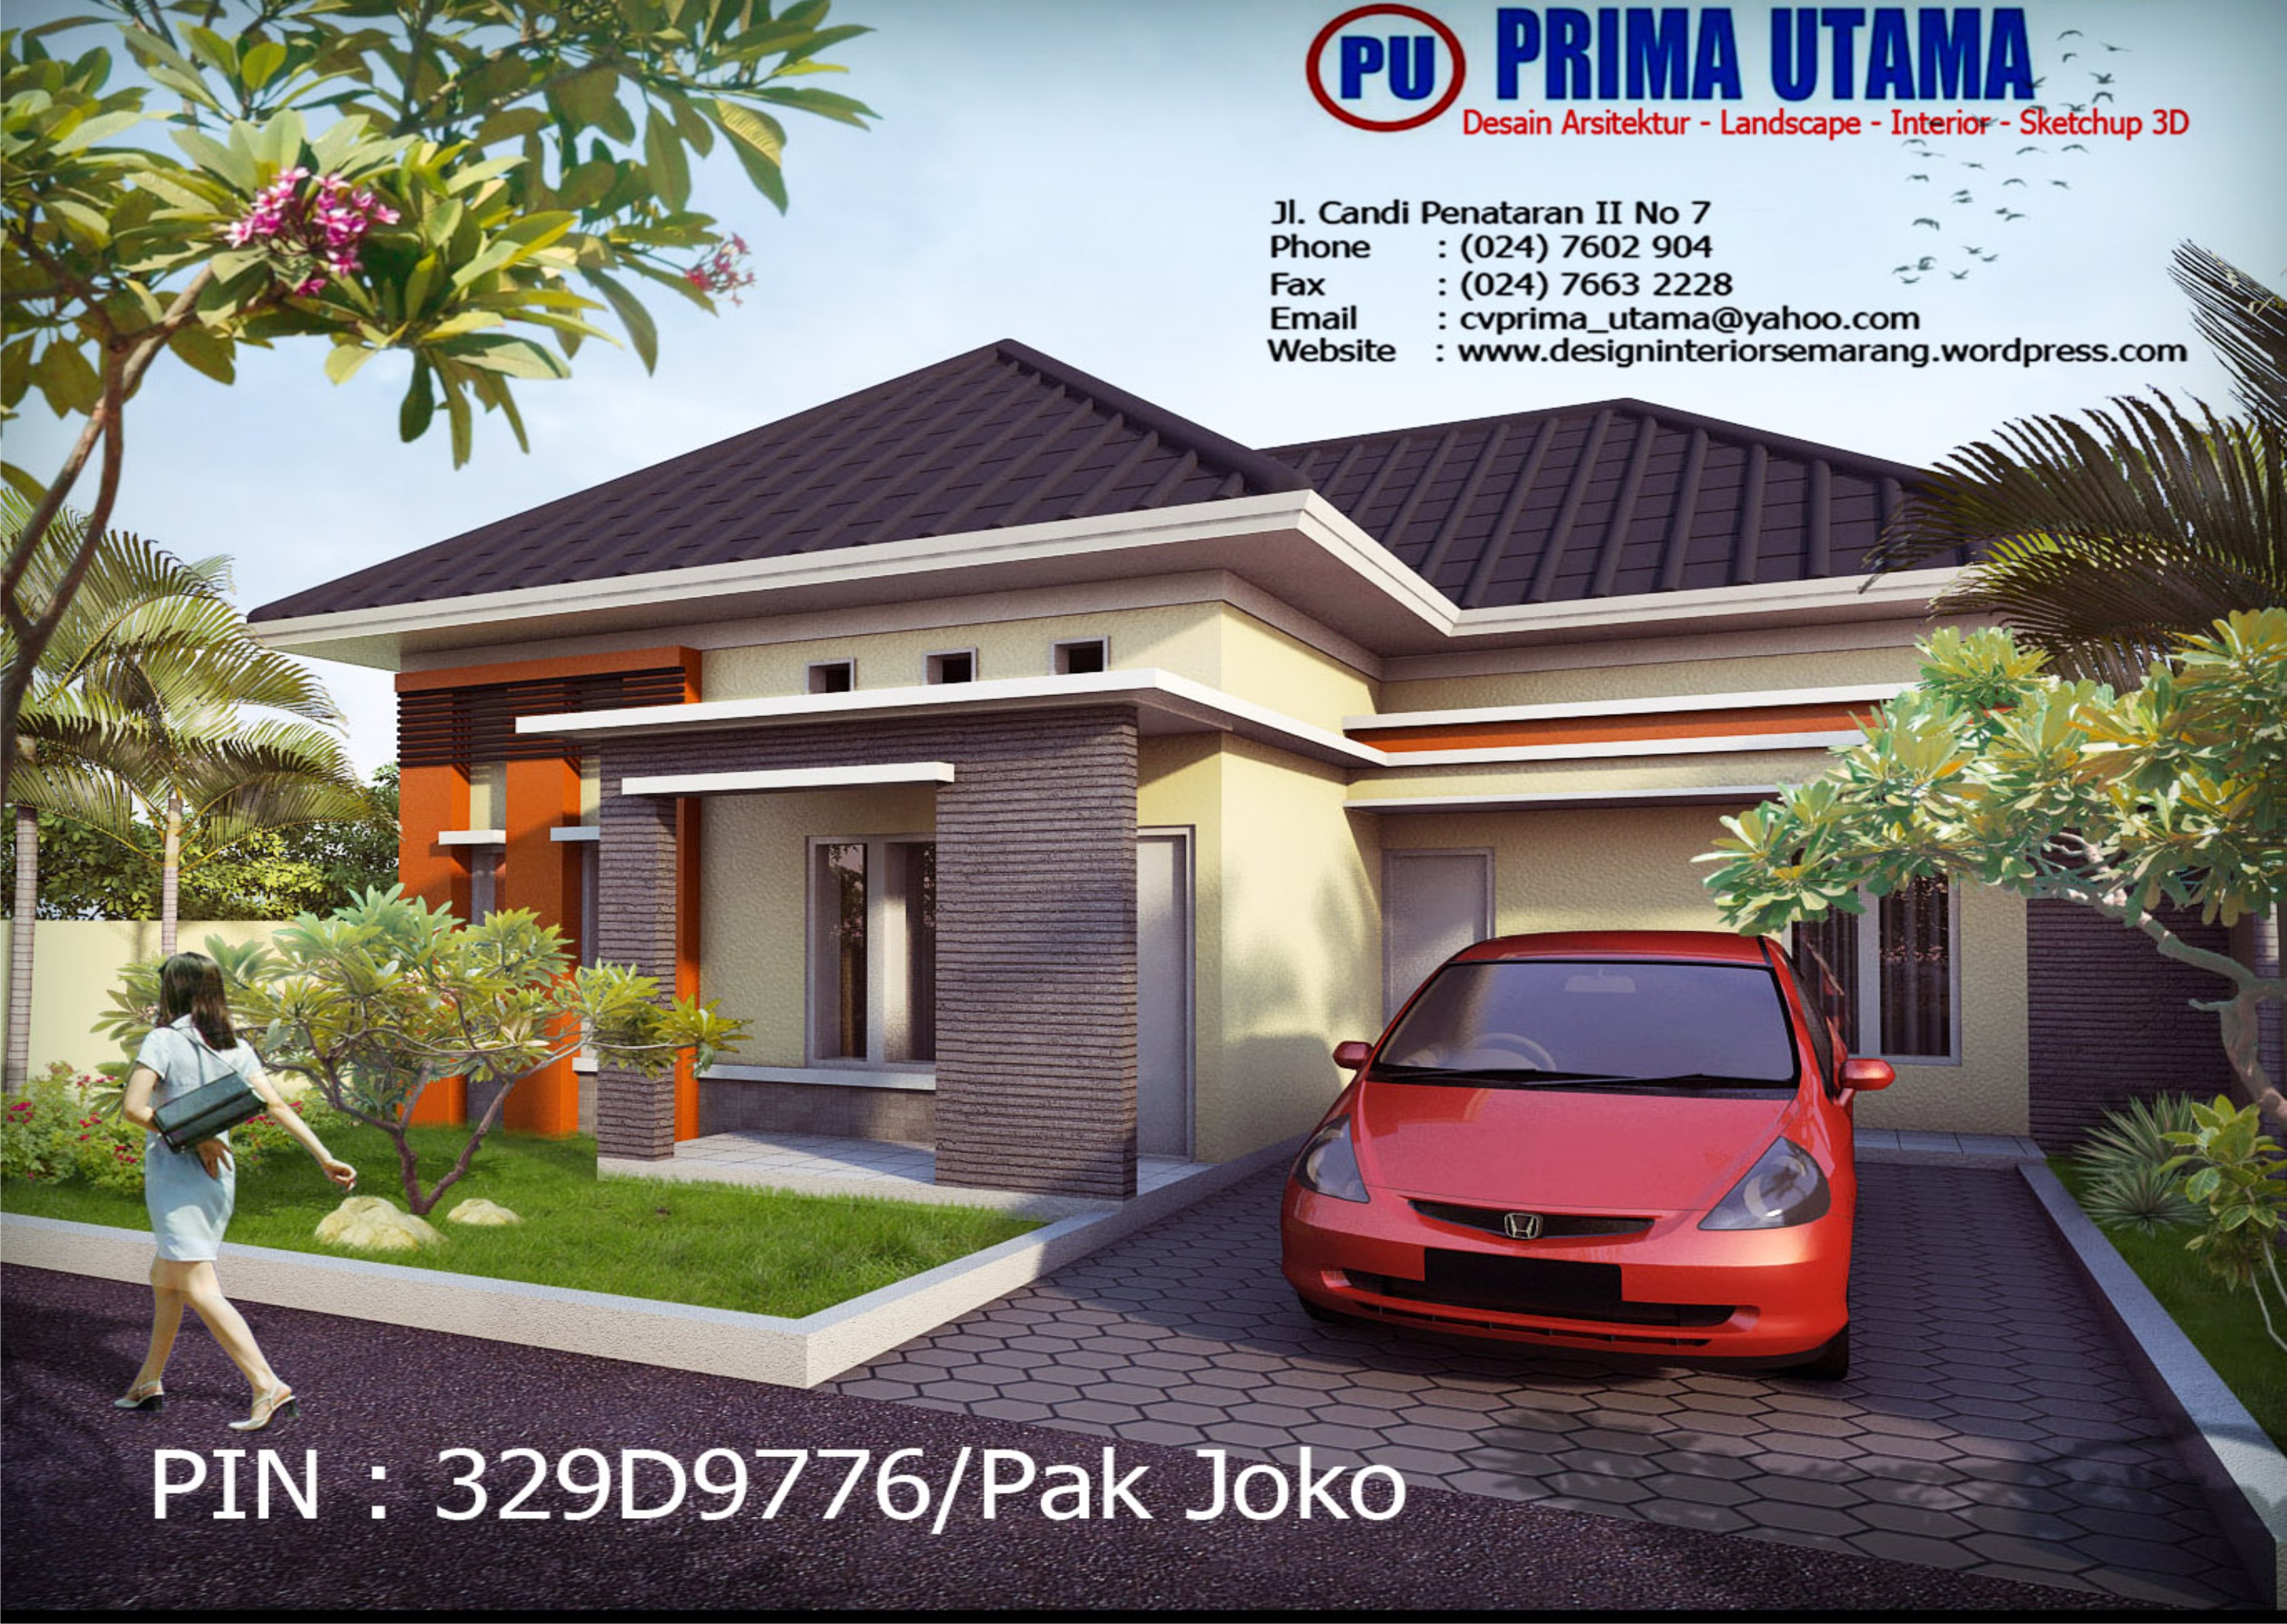 Jasa Desain Gambar Rumah 3D di Semarang Jawa Tengah  CV. PRIMA UTAMA